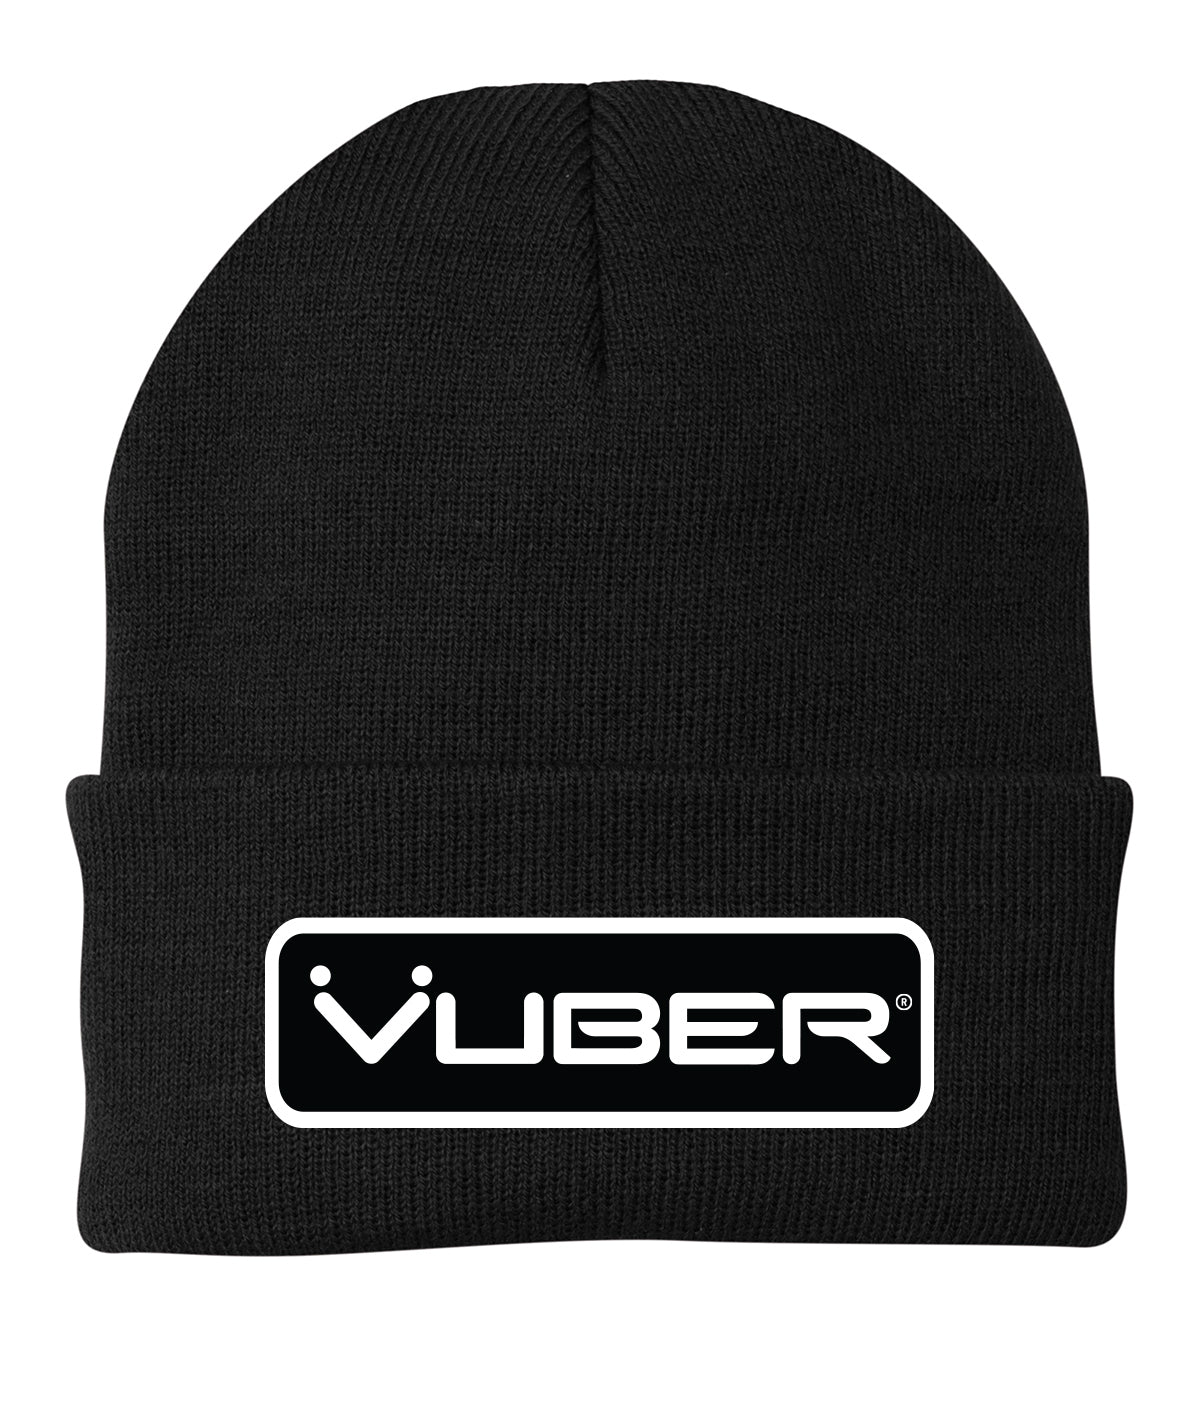 Vuber Beanie - Vuber Technologies